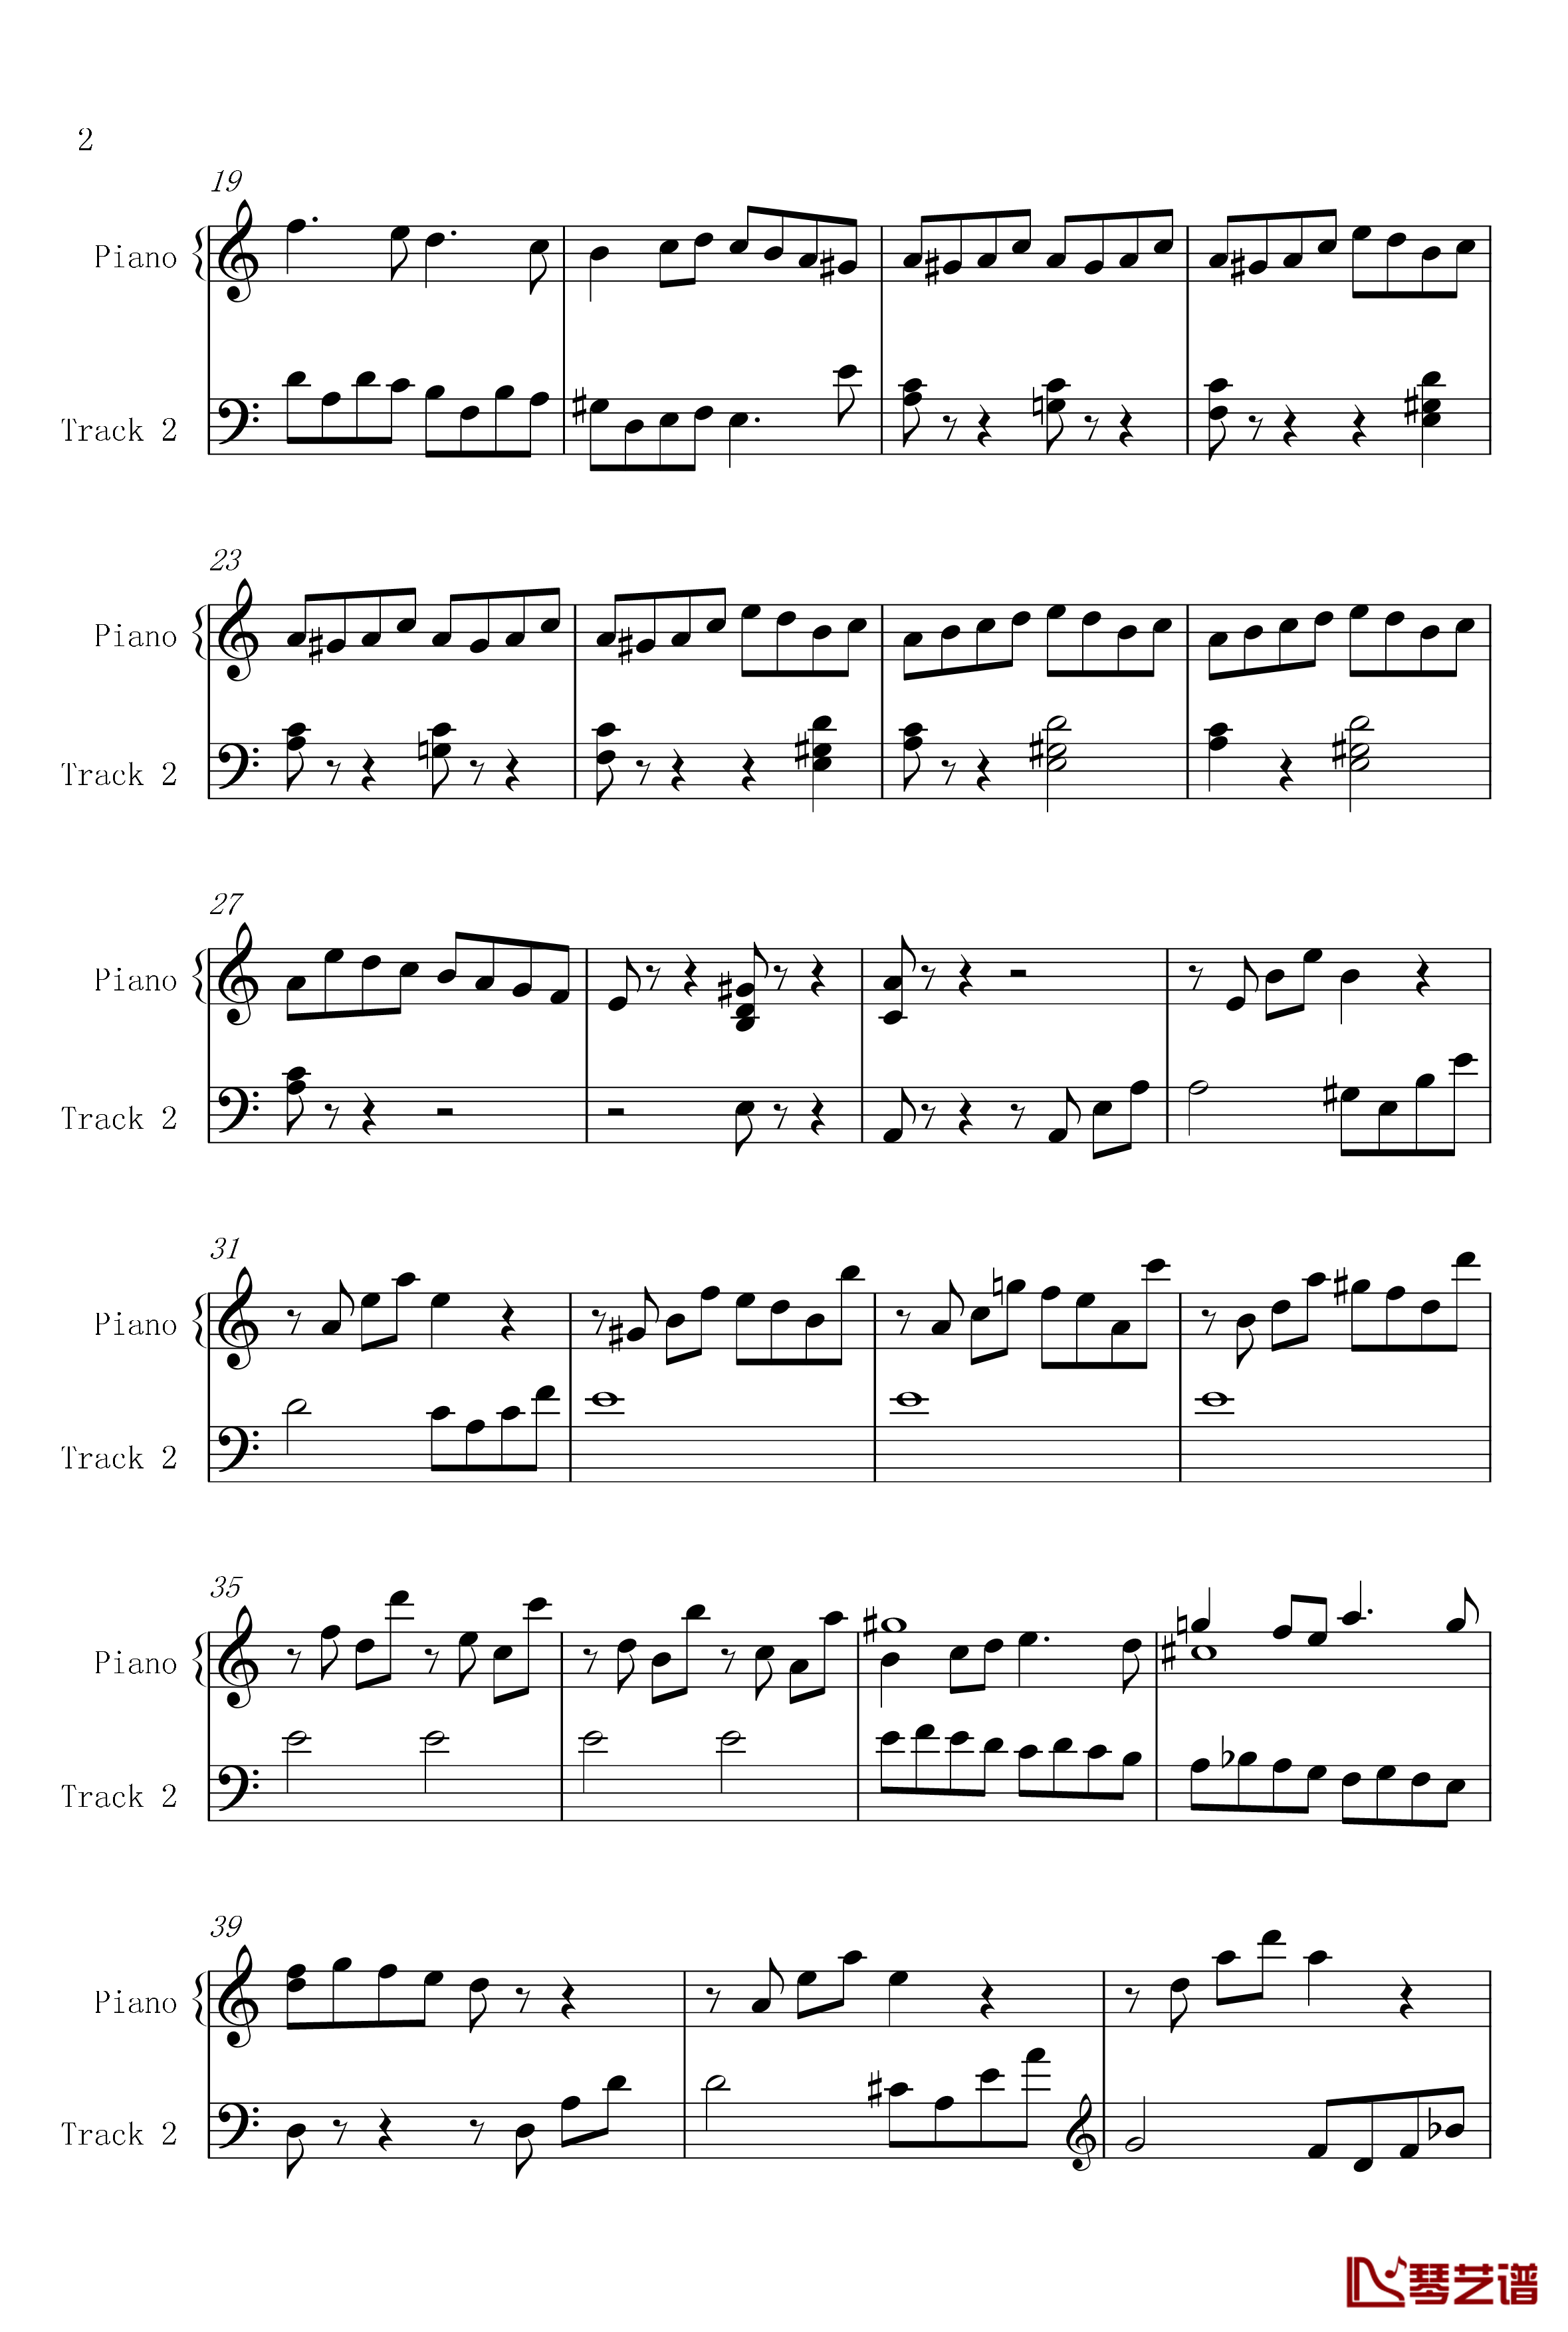 菲比赫小奏鸣曲钢琴谱-第一、二乐章-菲比赫2